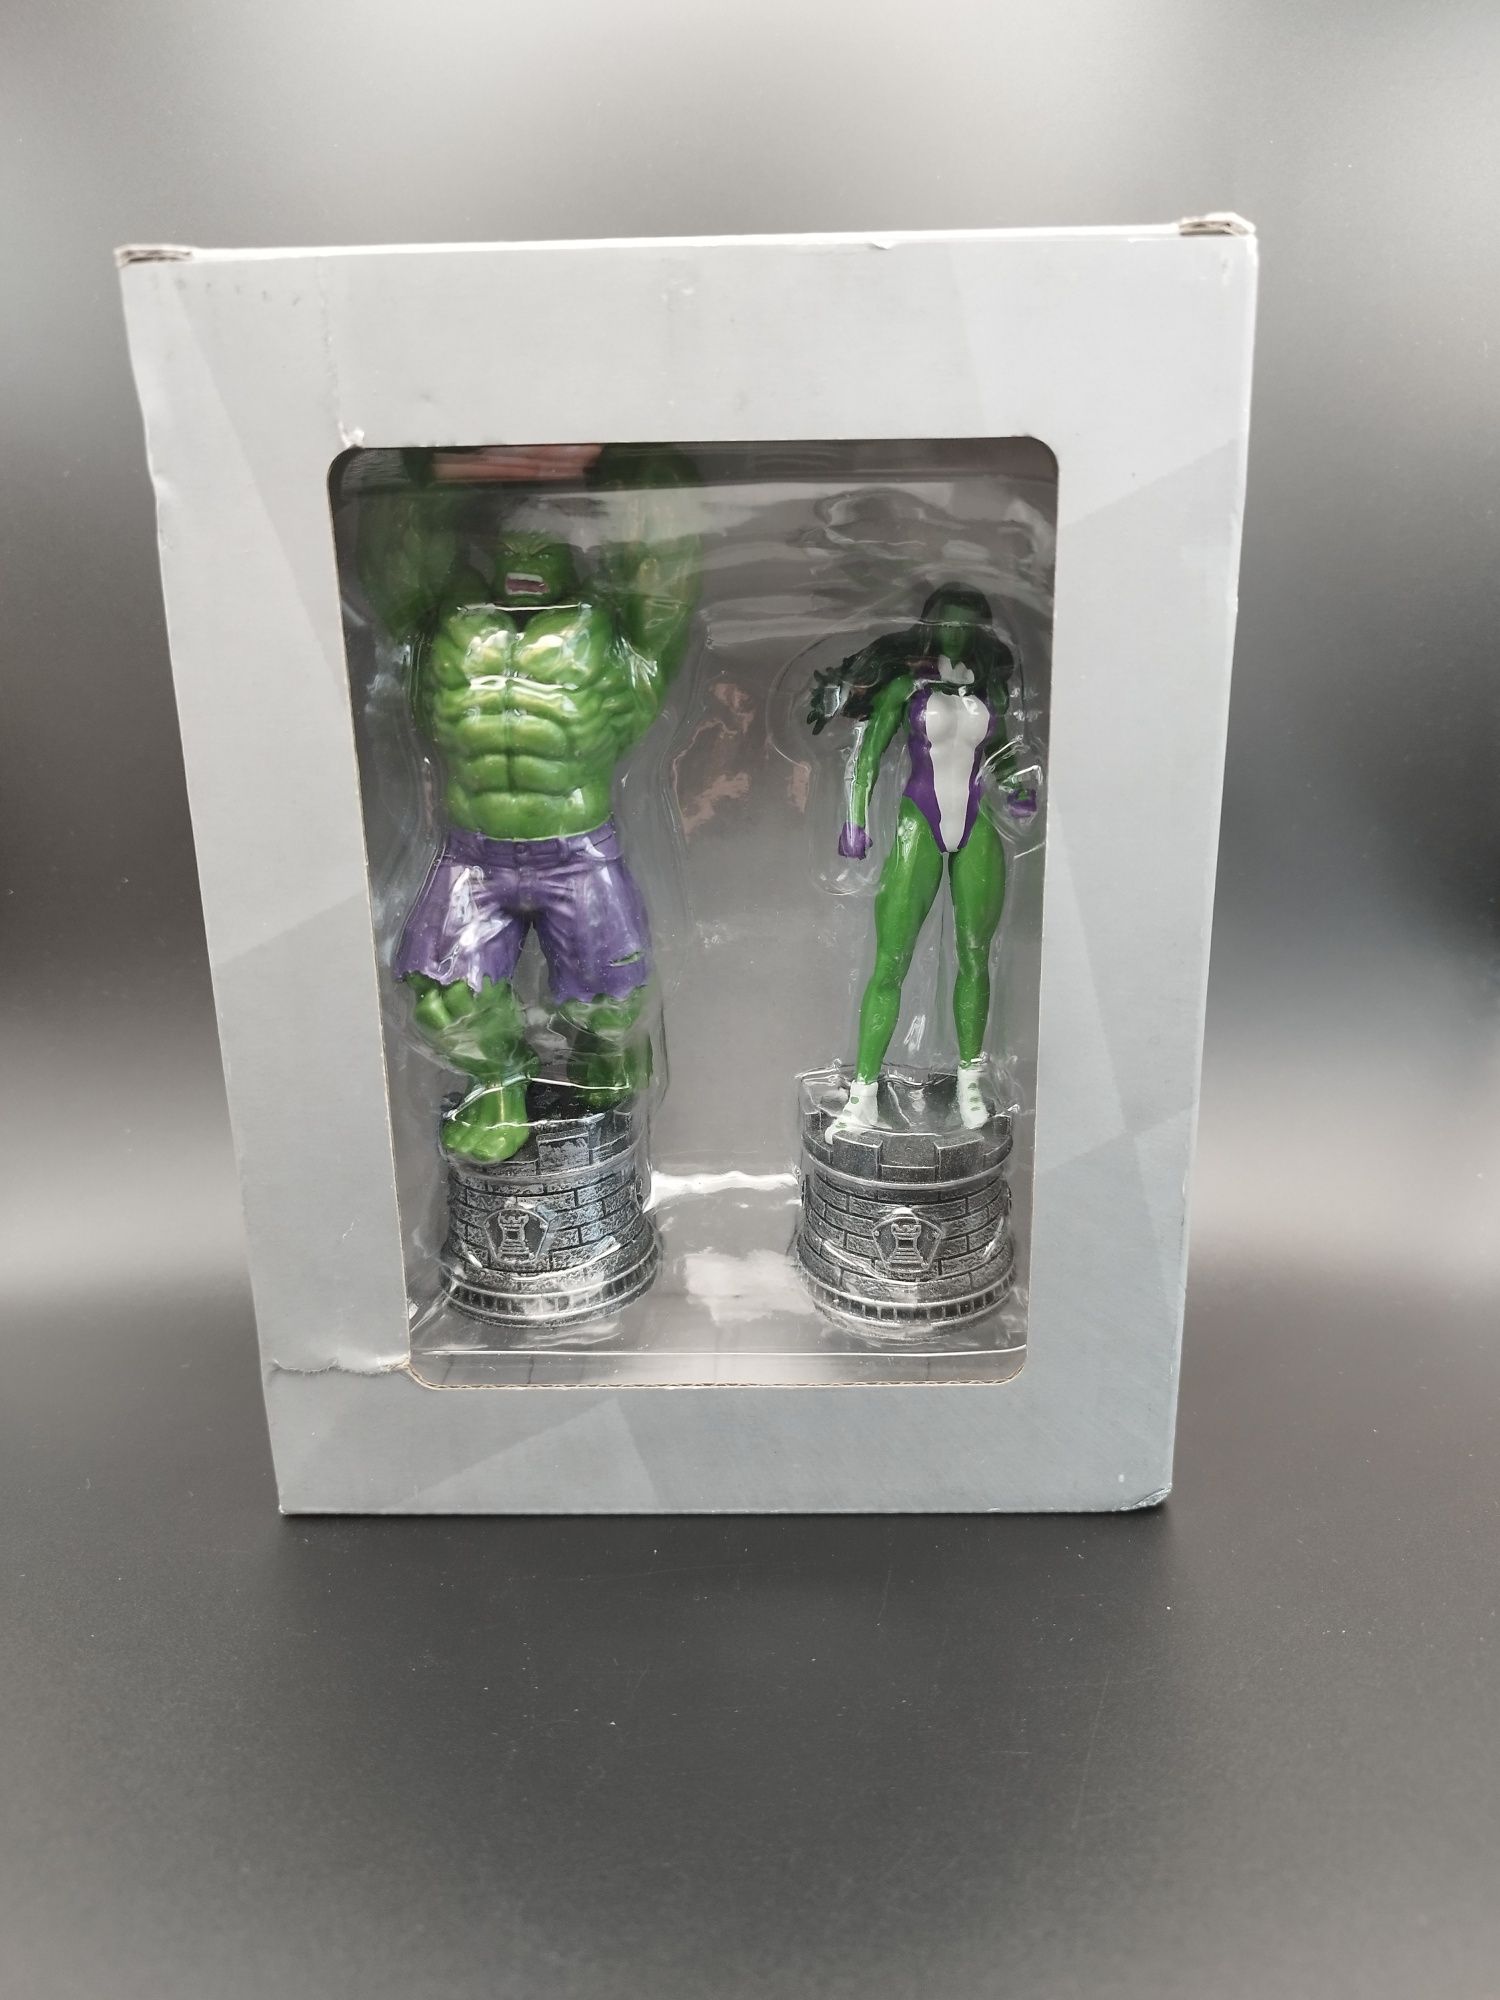 Zestaw Figurek Marvel szachowe Hulk i She Hulk ok 13 cm

piotr.trepko